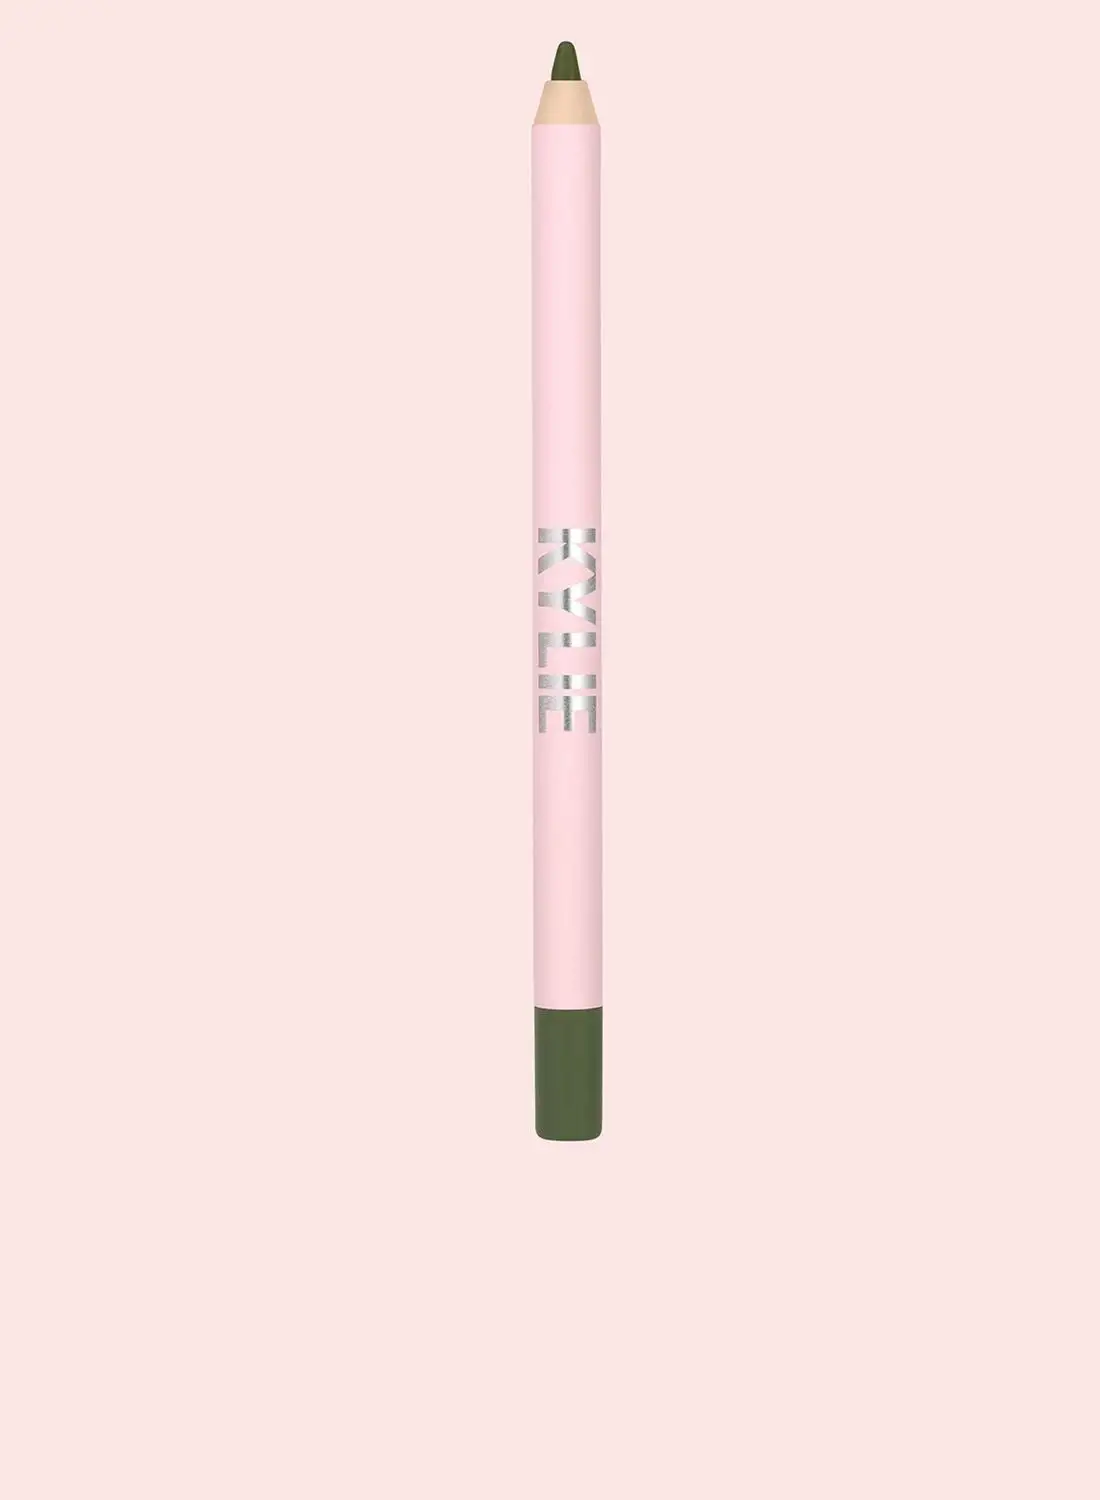 Kylie Cosmetics Kyliner Waterproof Gel Eyeliner Pencil - 005 - Jungle Green